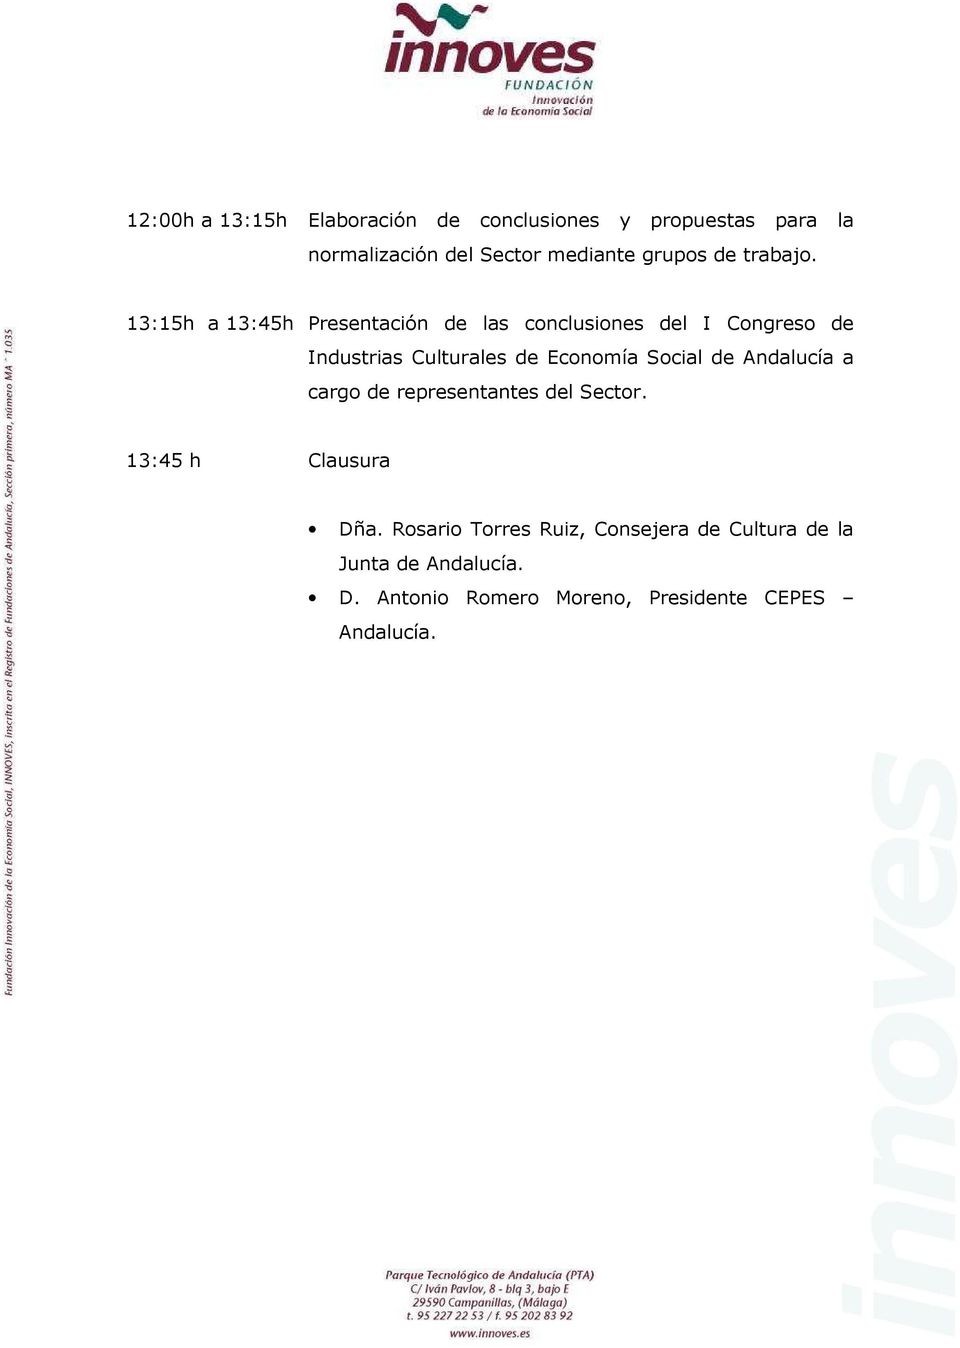 13:15h a 13:45h Presentación de las conclusiones del I Congreso de Industrias Culturales de Economía